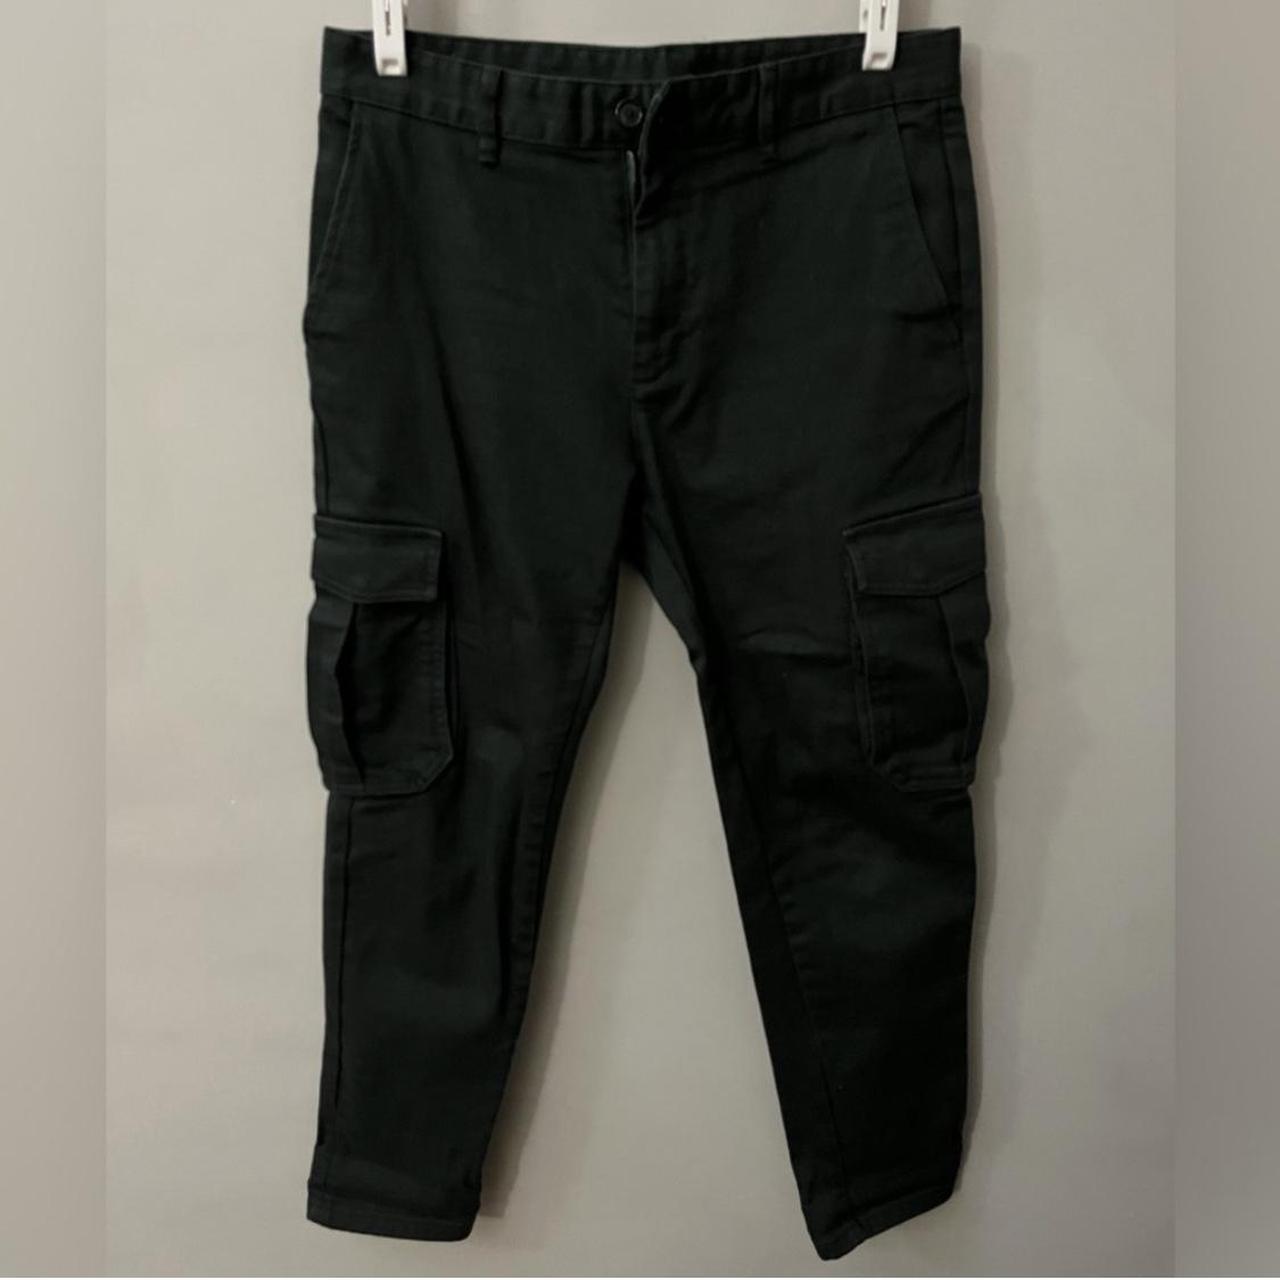 Zara slim fit cargo jeans in dark green. Worn only a - Depop